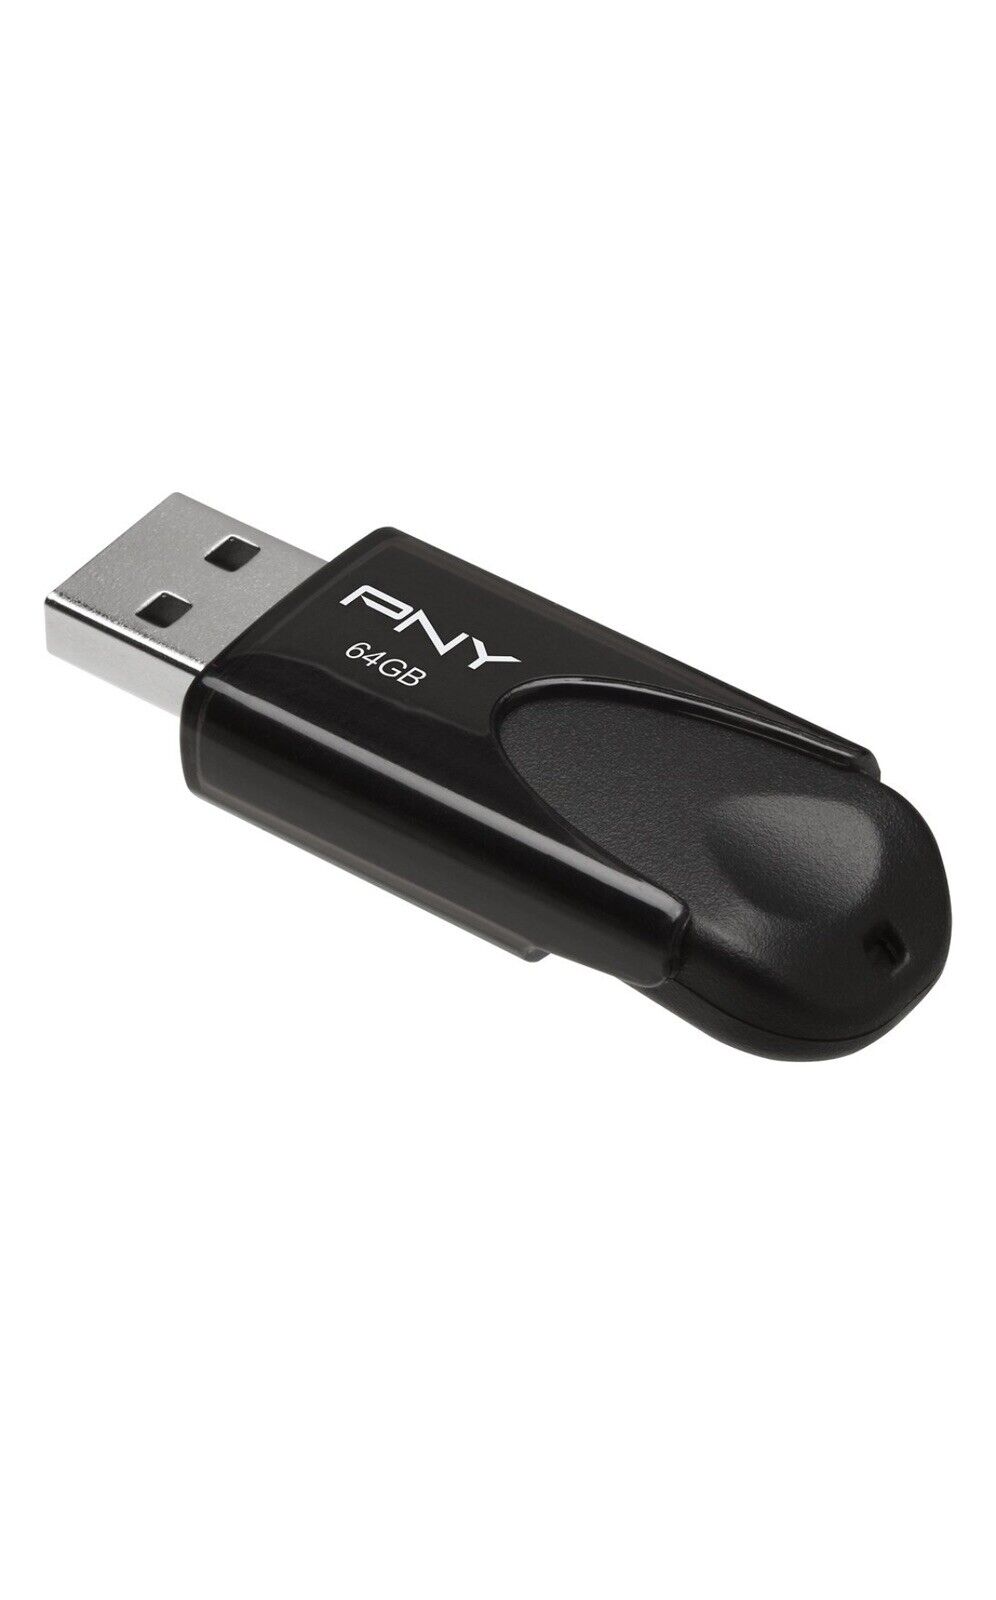 PNY Turbo Attaché 4 USB 3.0 64GB Flash Drive P-FD64GTBAT4-GE